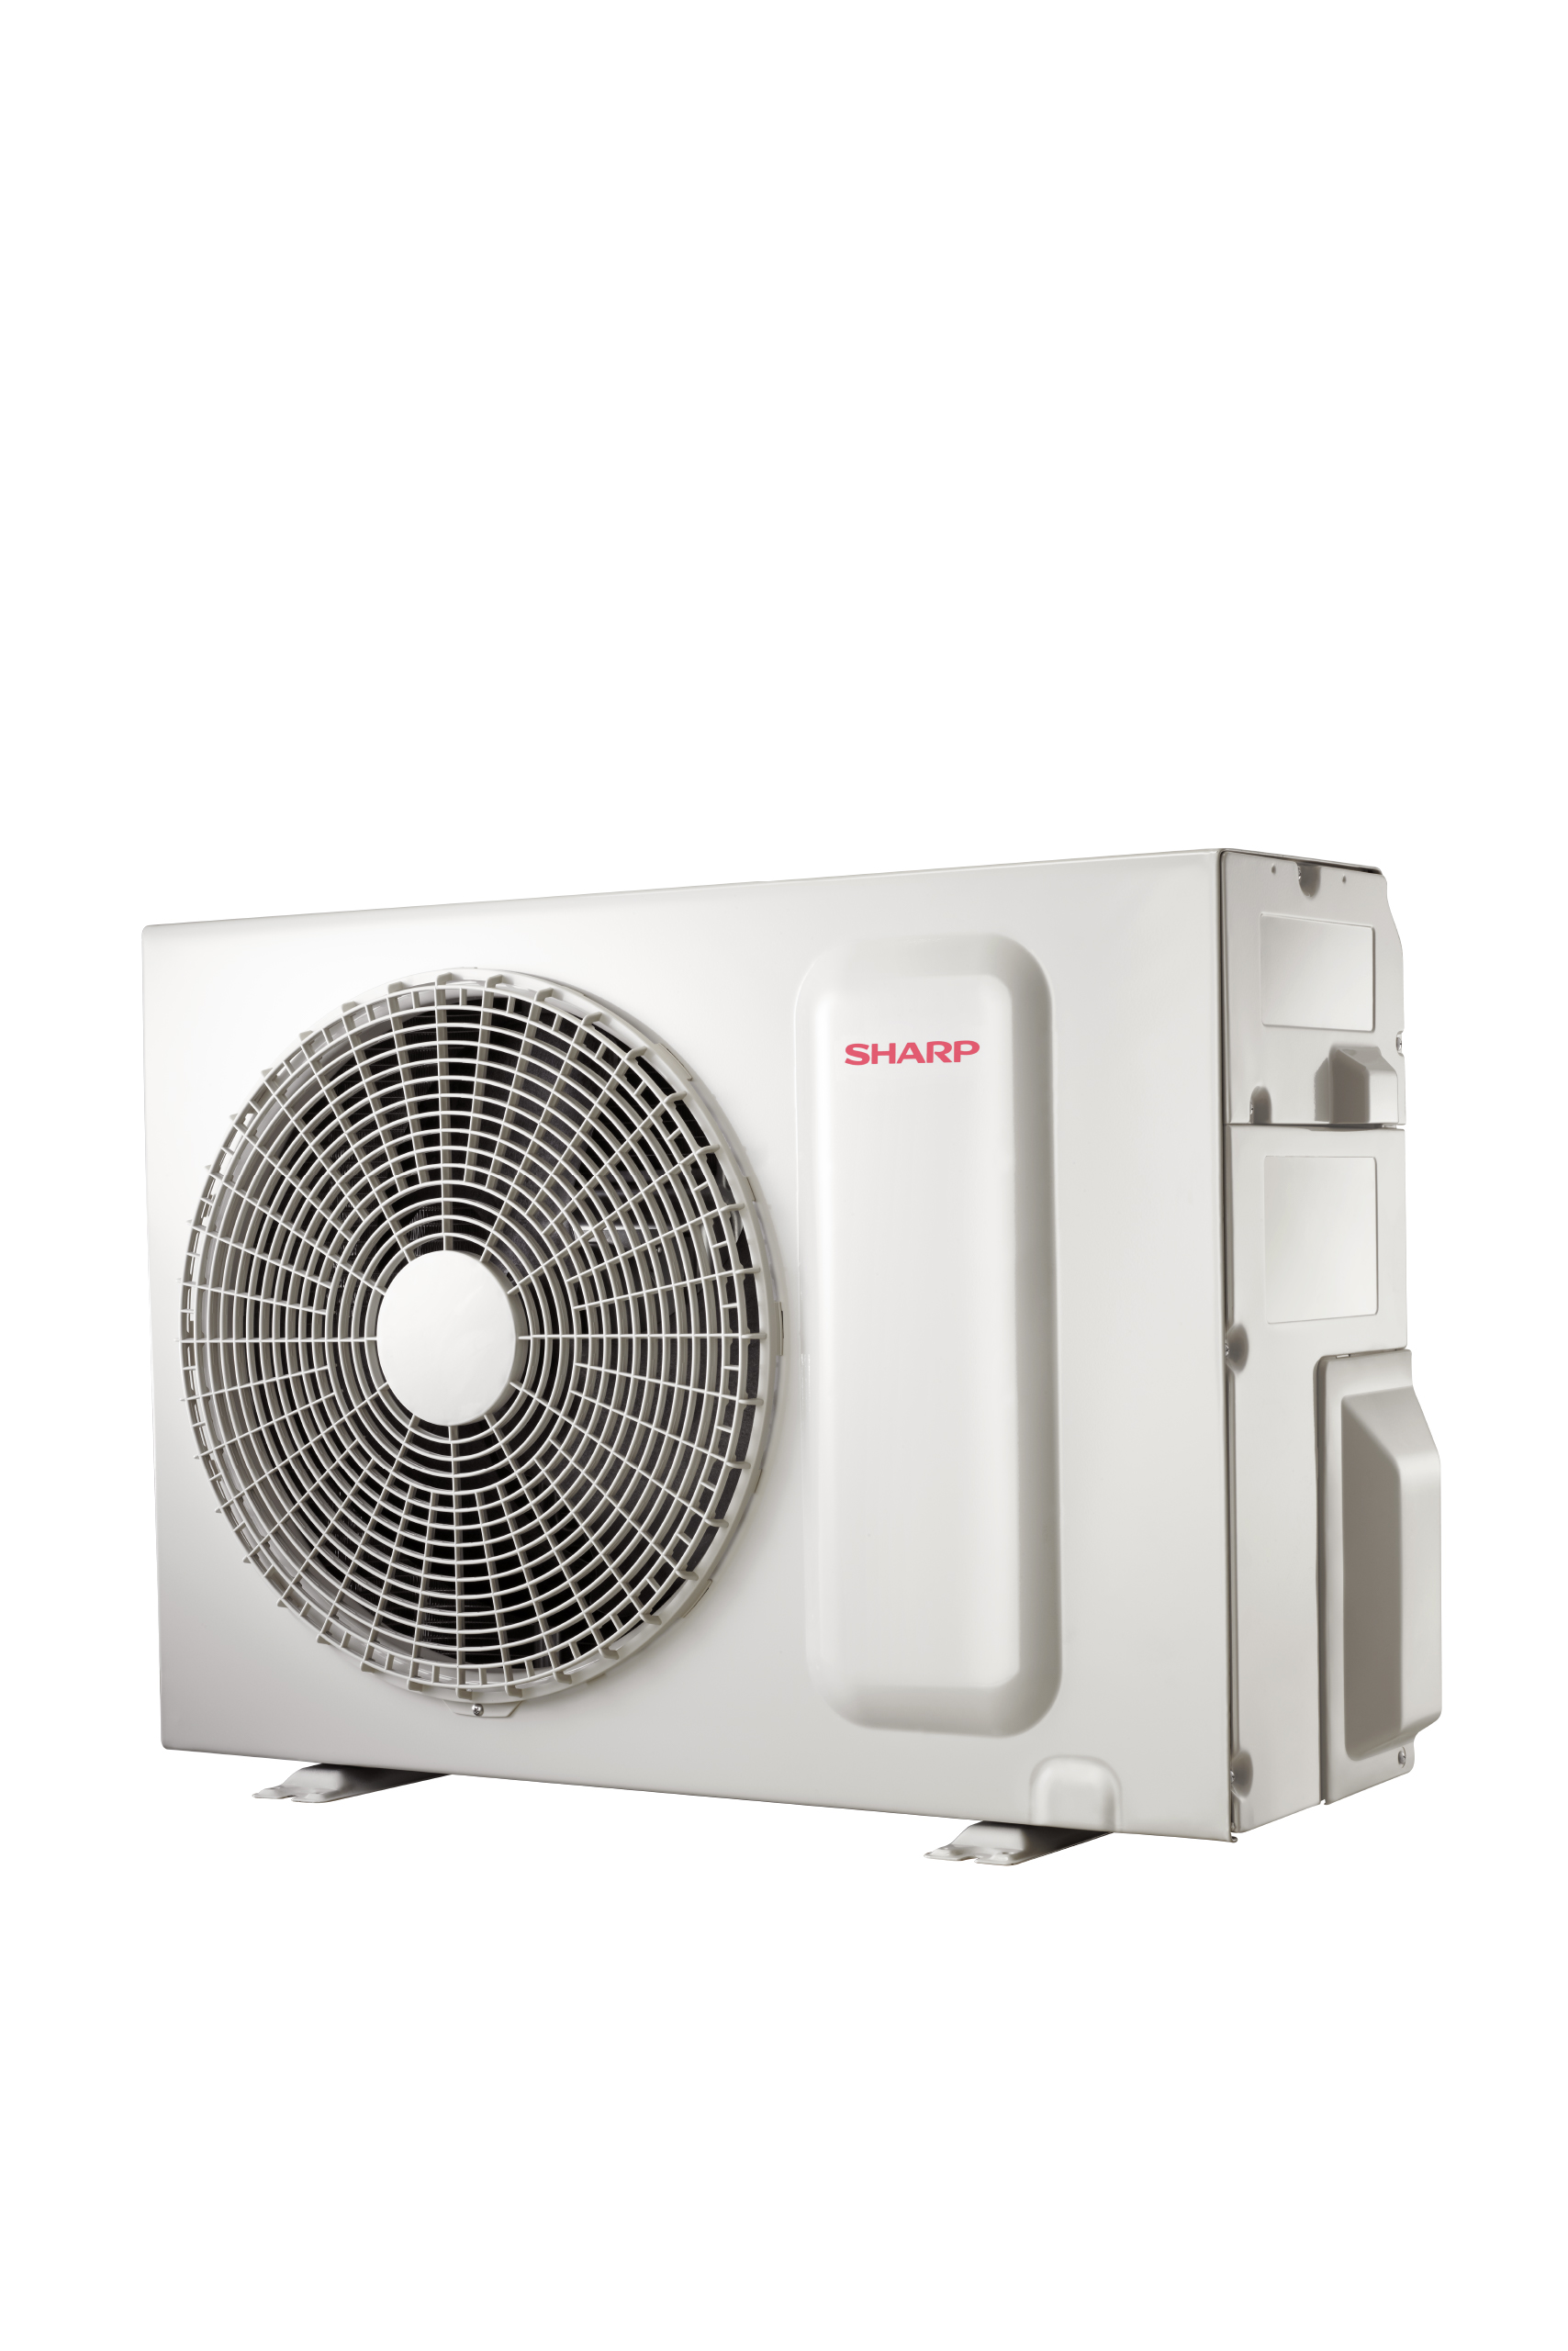 Sharp Air Conditioner 2 Ton